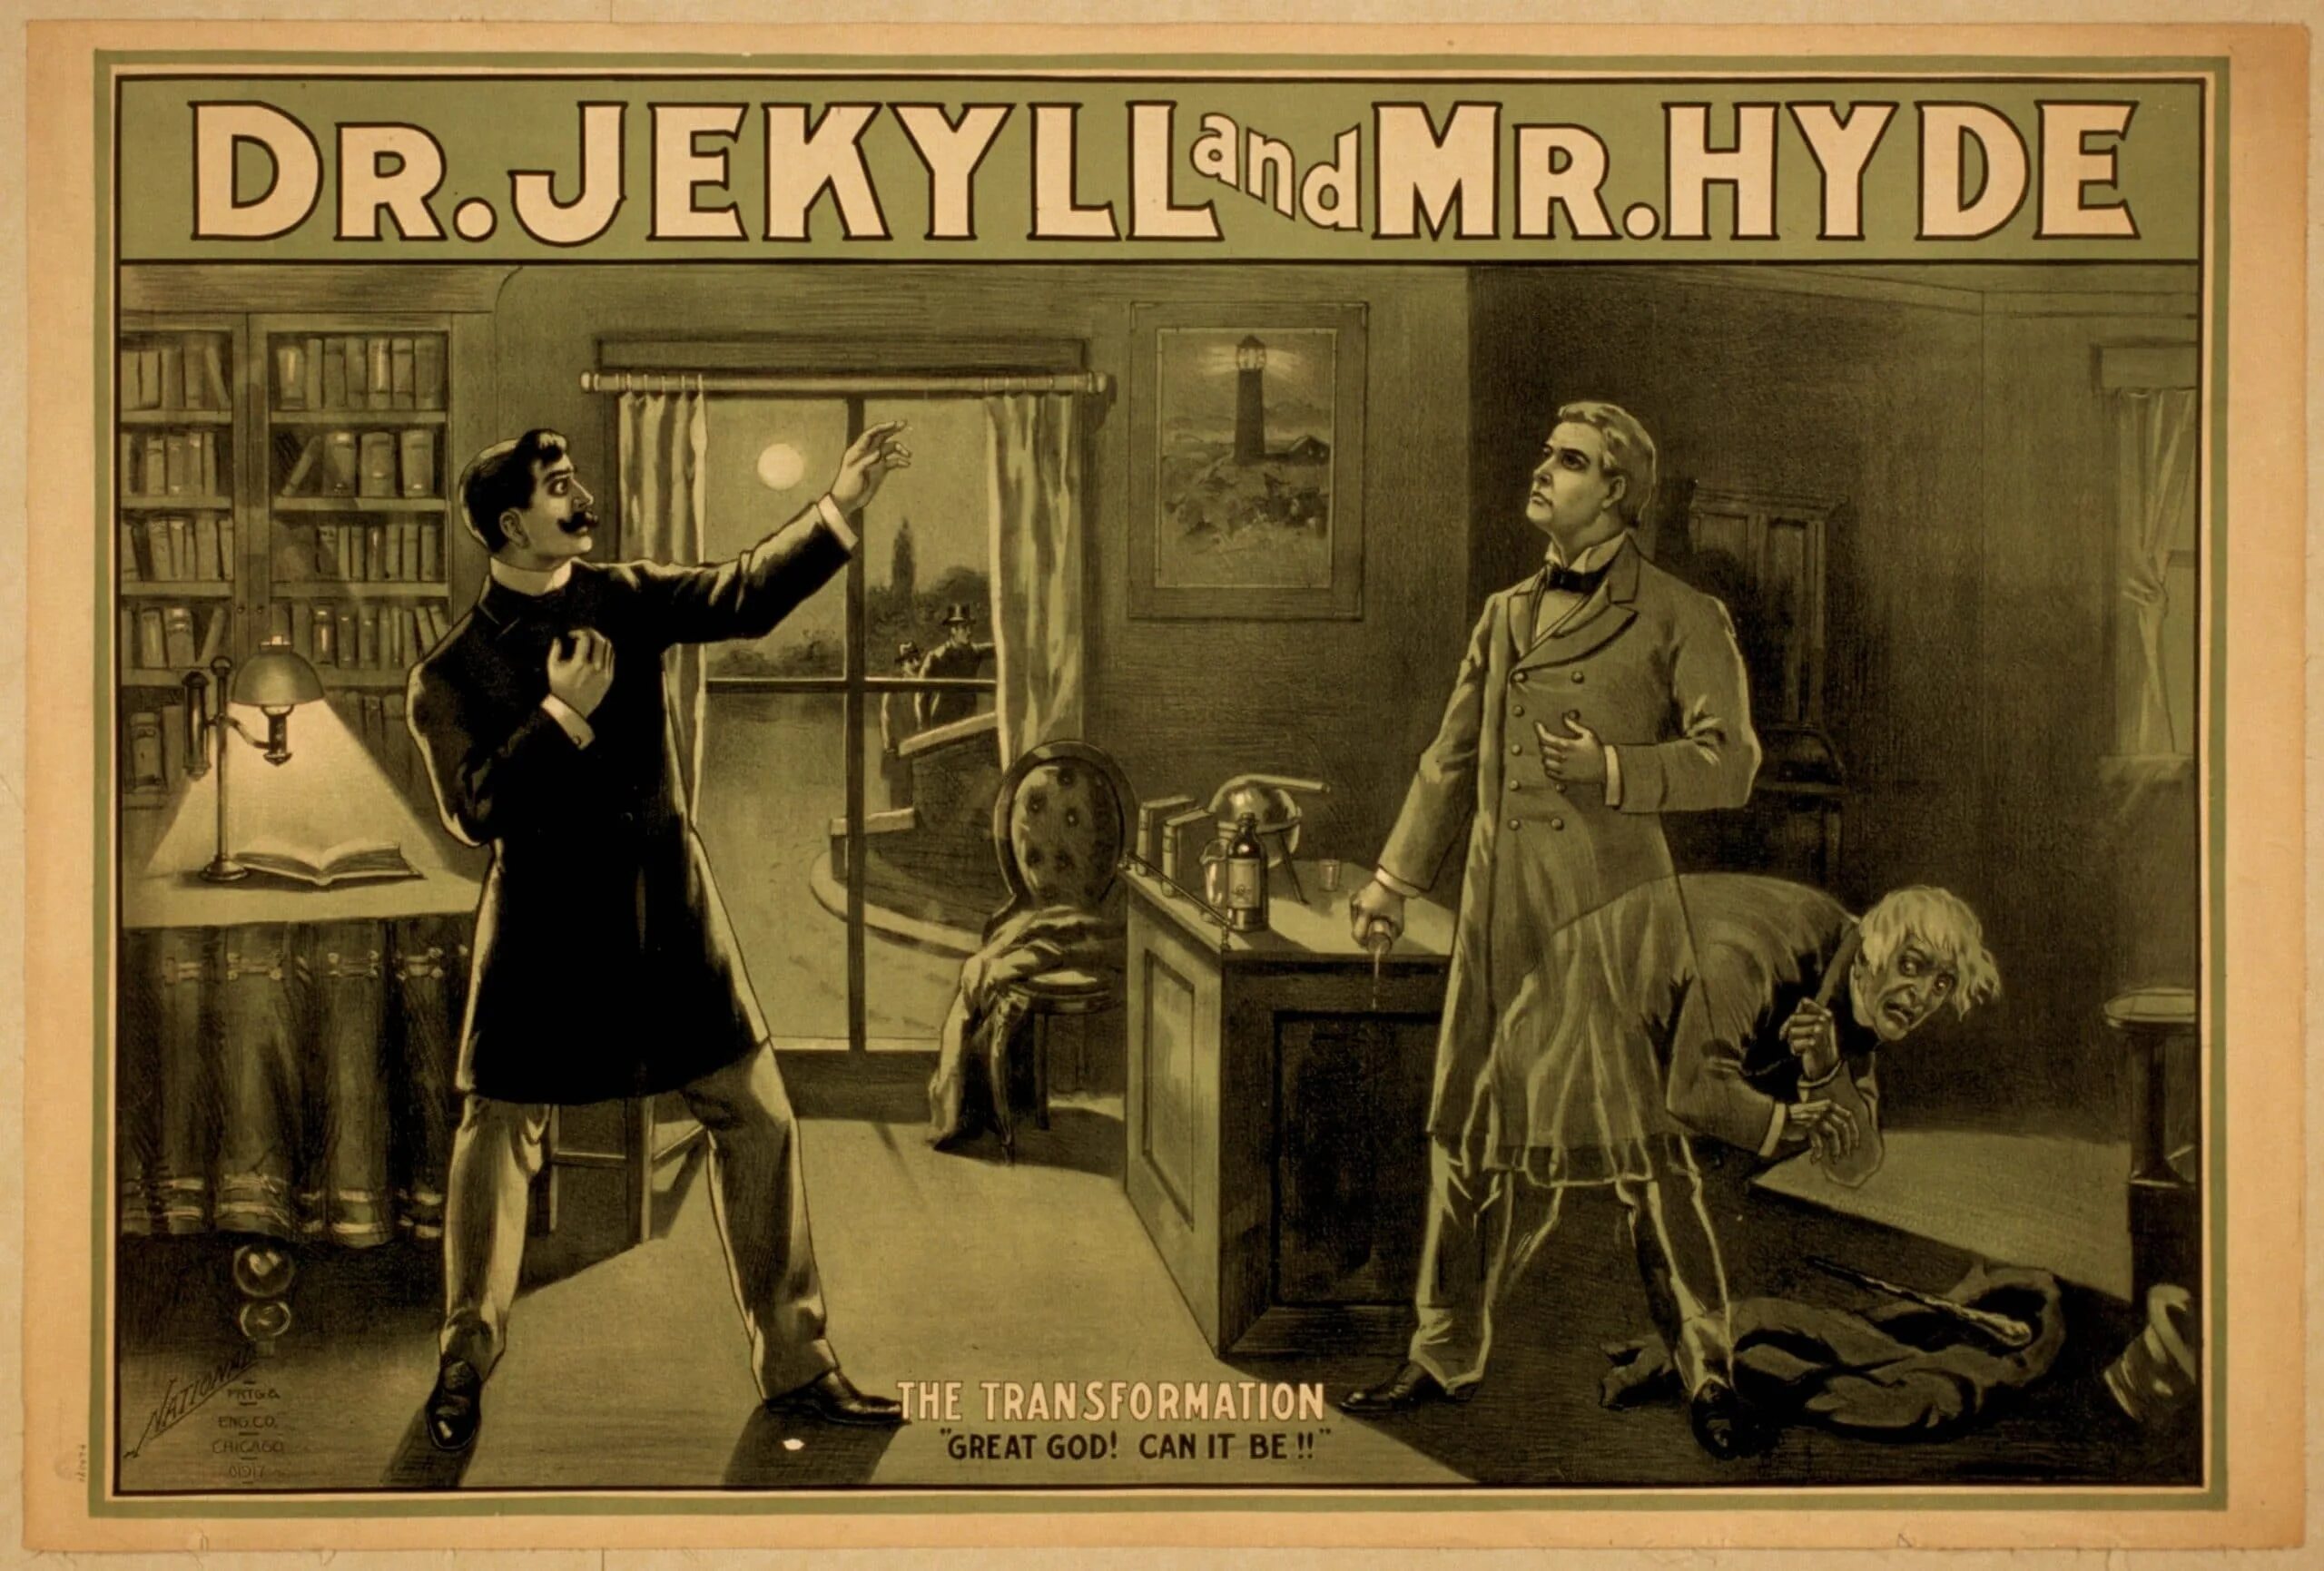 Джекил и хайд краткое содержание. Мистер Хайд и доктор Джекил. Стивенсон доктор Джекил 1886.